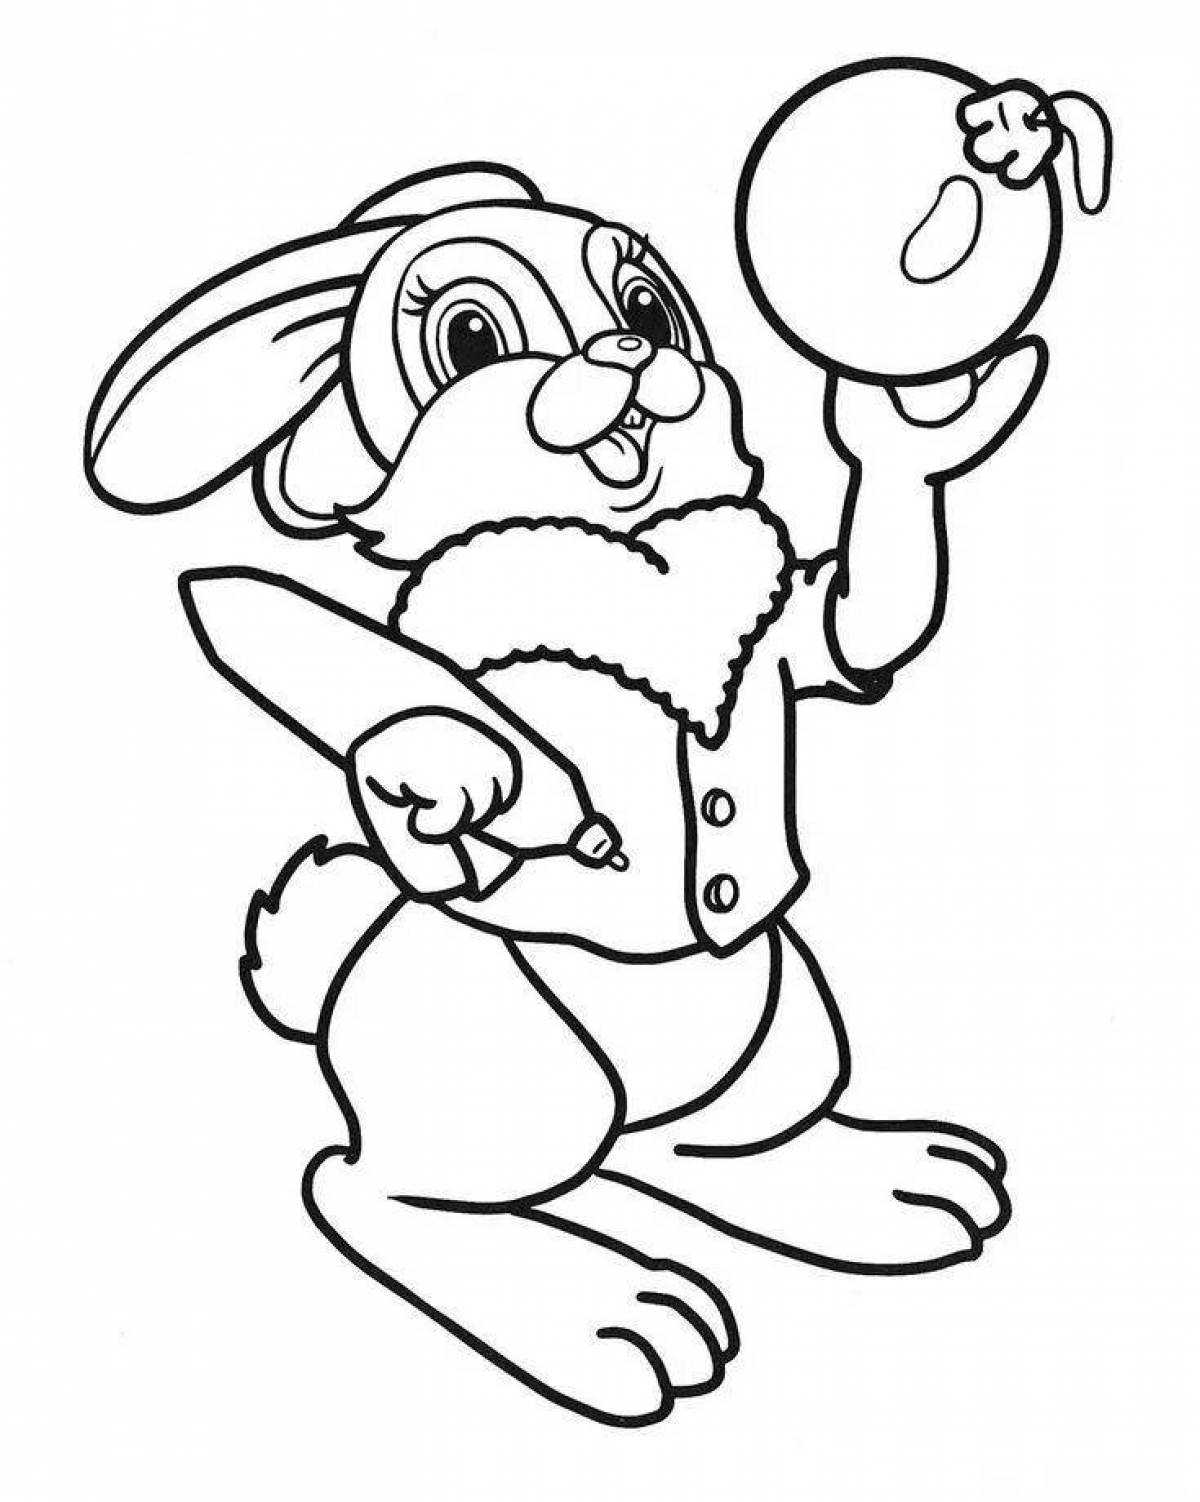 A fun Christmas coloring book for a bunny